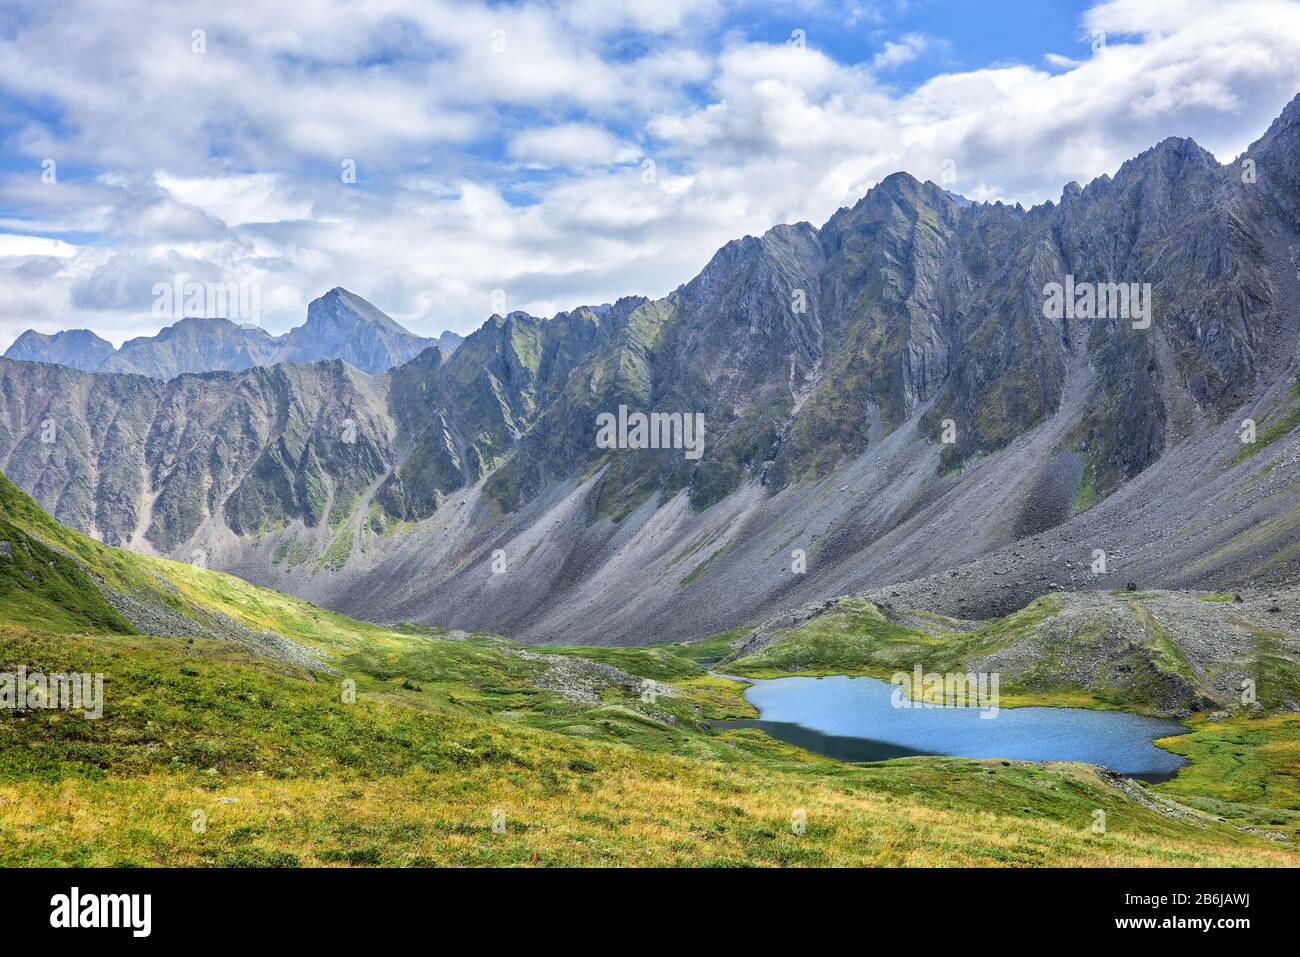 Tundra alpina siberiana con el telón de fondo de la cordillera. Un paisaje alpino característico con escasa vegetación en Siberia oriental. Valle del valle Foto de stock